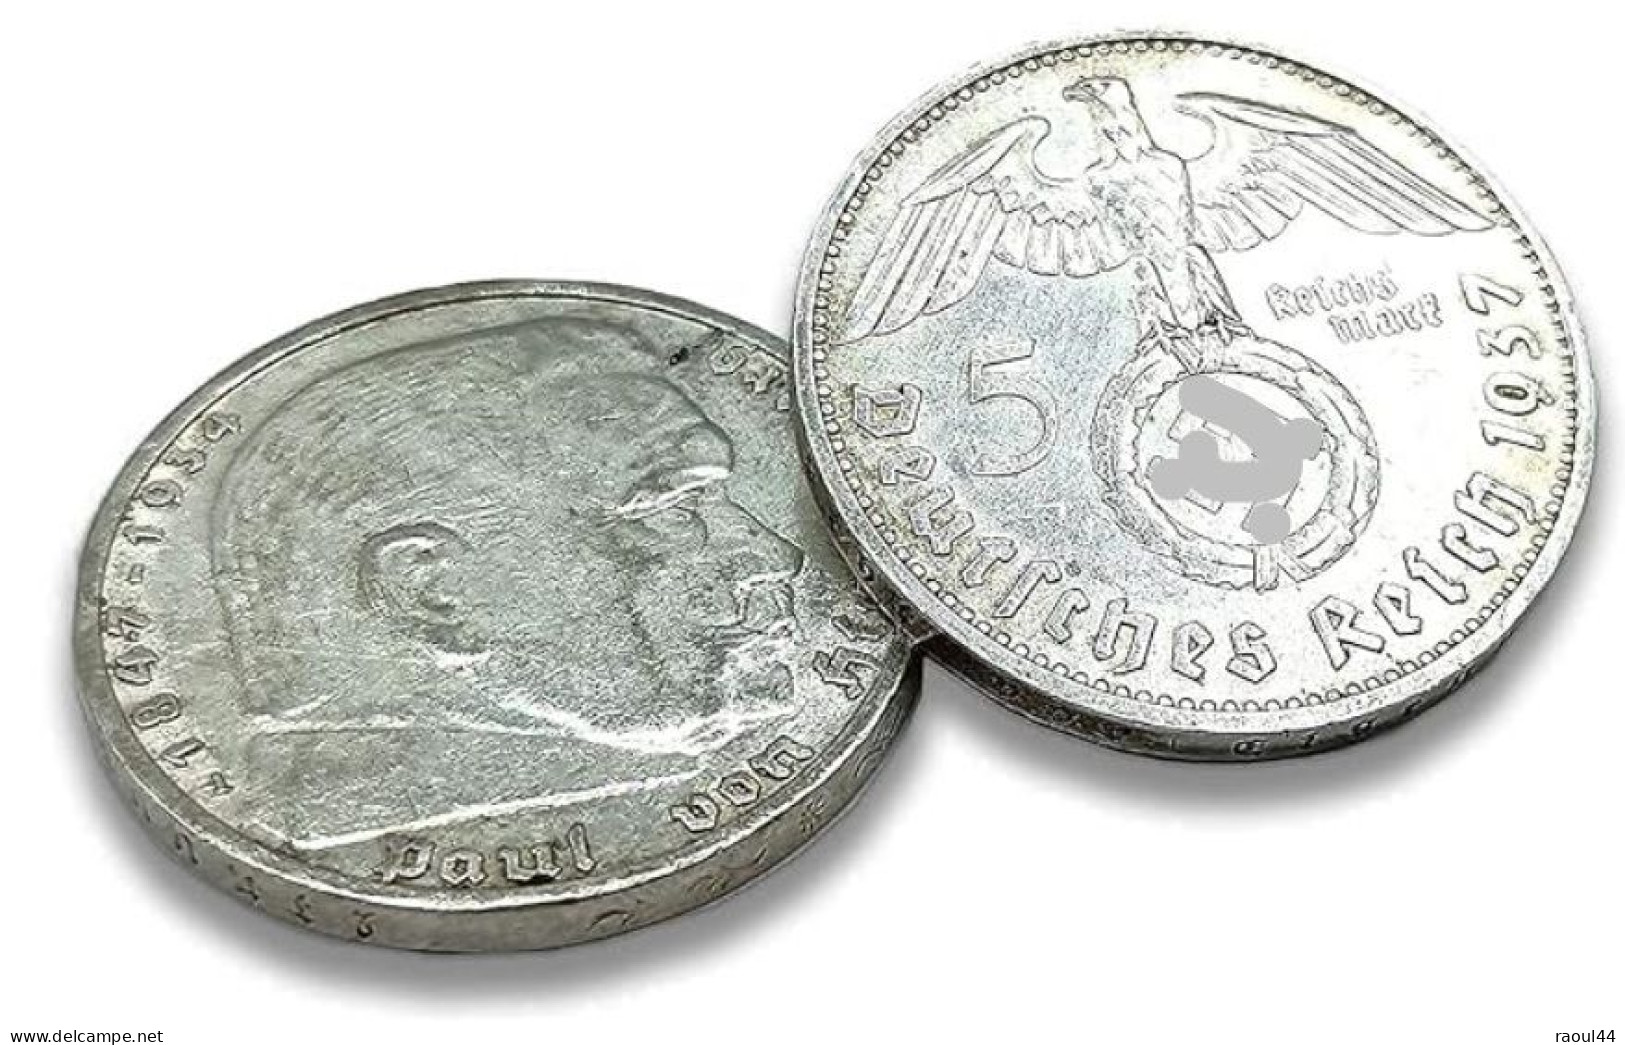 5 Reichsmark (von Hindenburg), 4 Pièces 1936 à 1939 - 5 Reichsmark